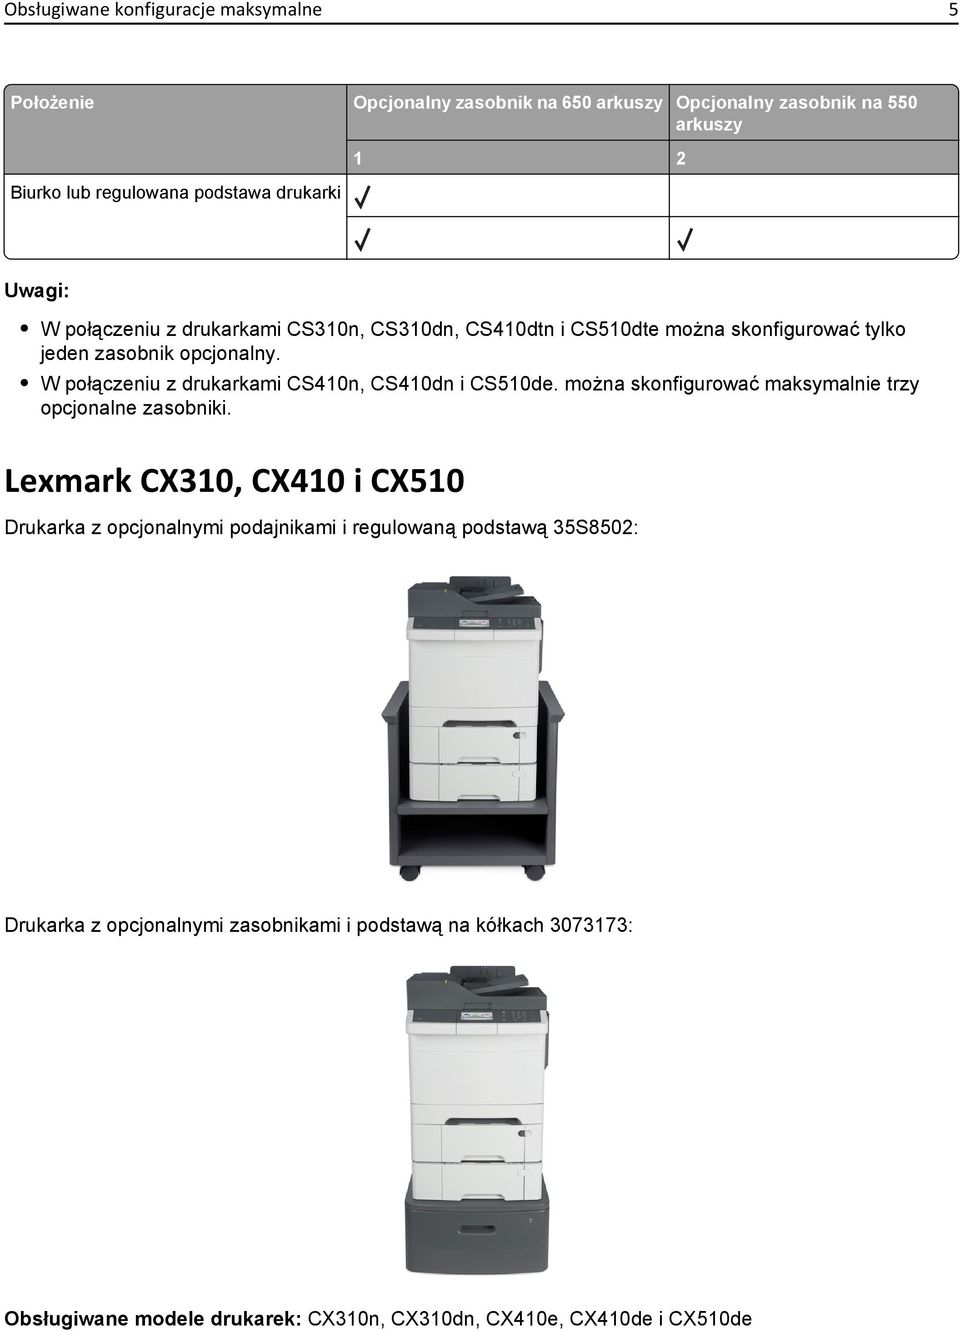 W połączeniu z drukarkami CS410n, CS410dn i CS510de. można skonfigurować maksymalnie trzy opcjonalne zasobniki.